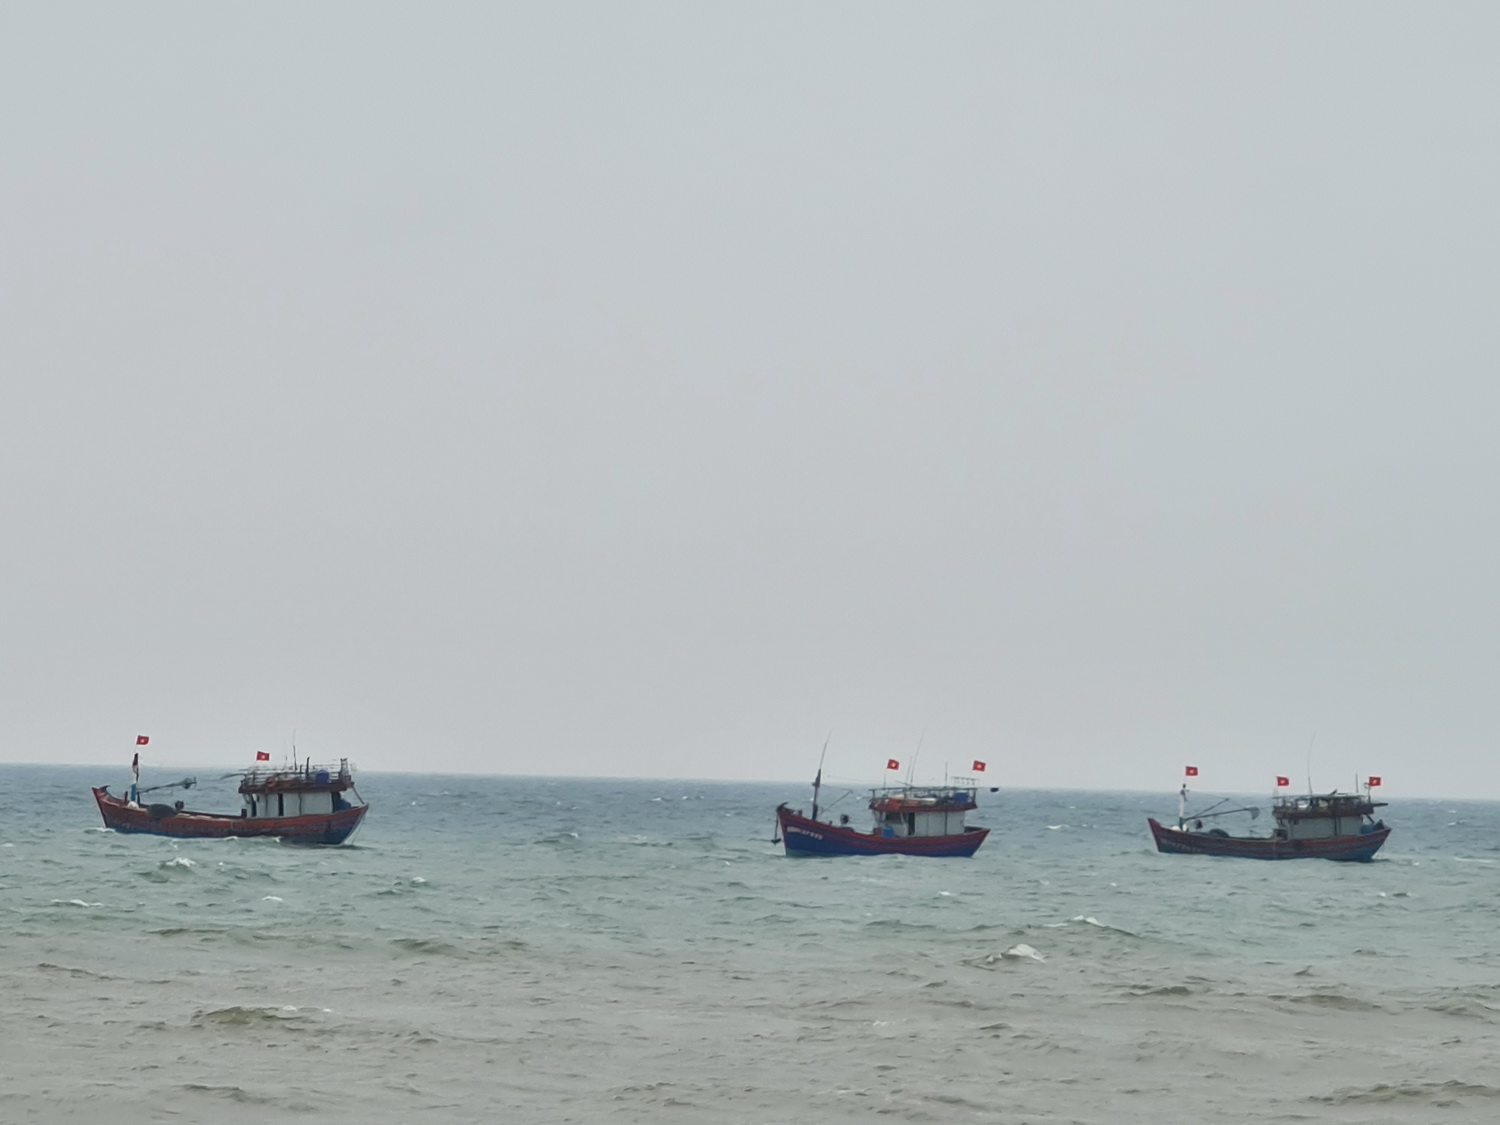 vov_Tàu cá của ngư dân Quảng Bình hoạt động trên biển.jpg